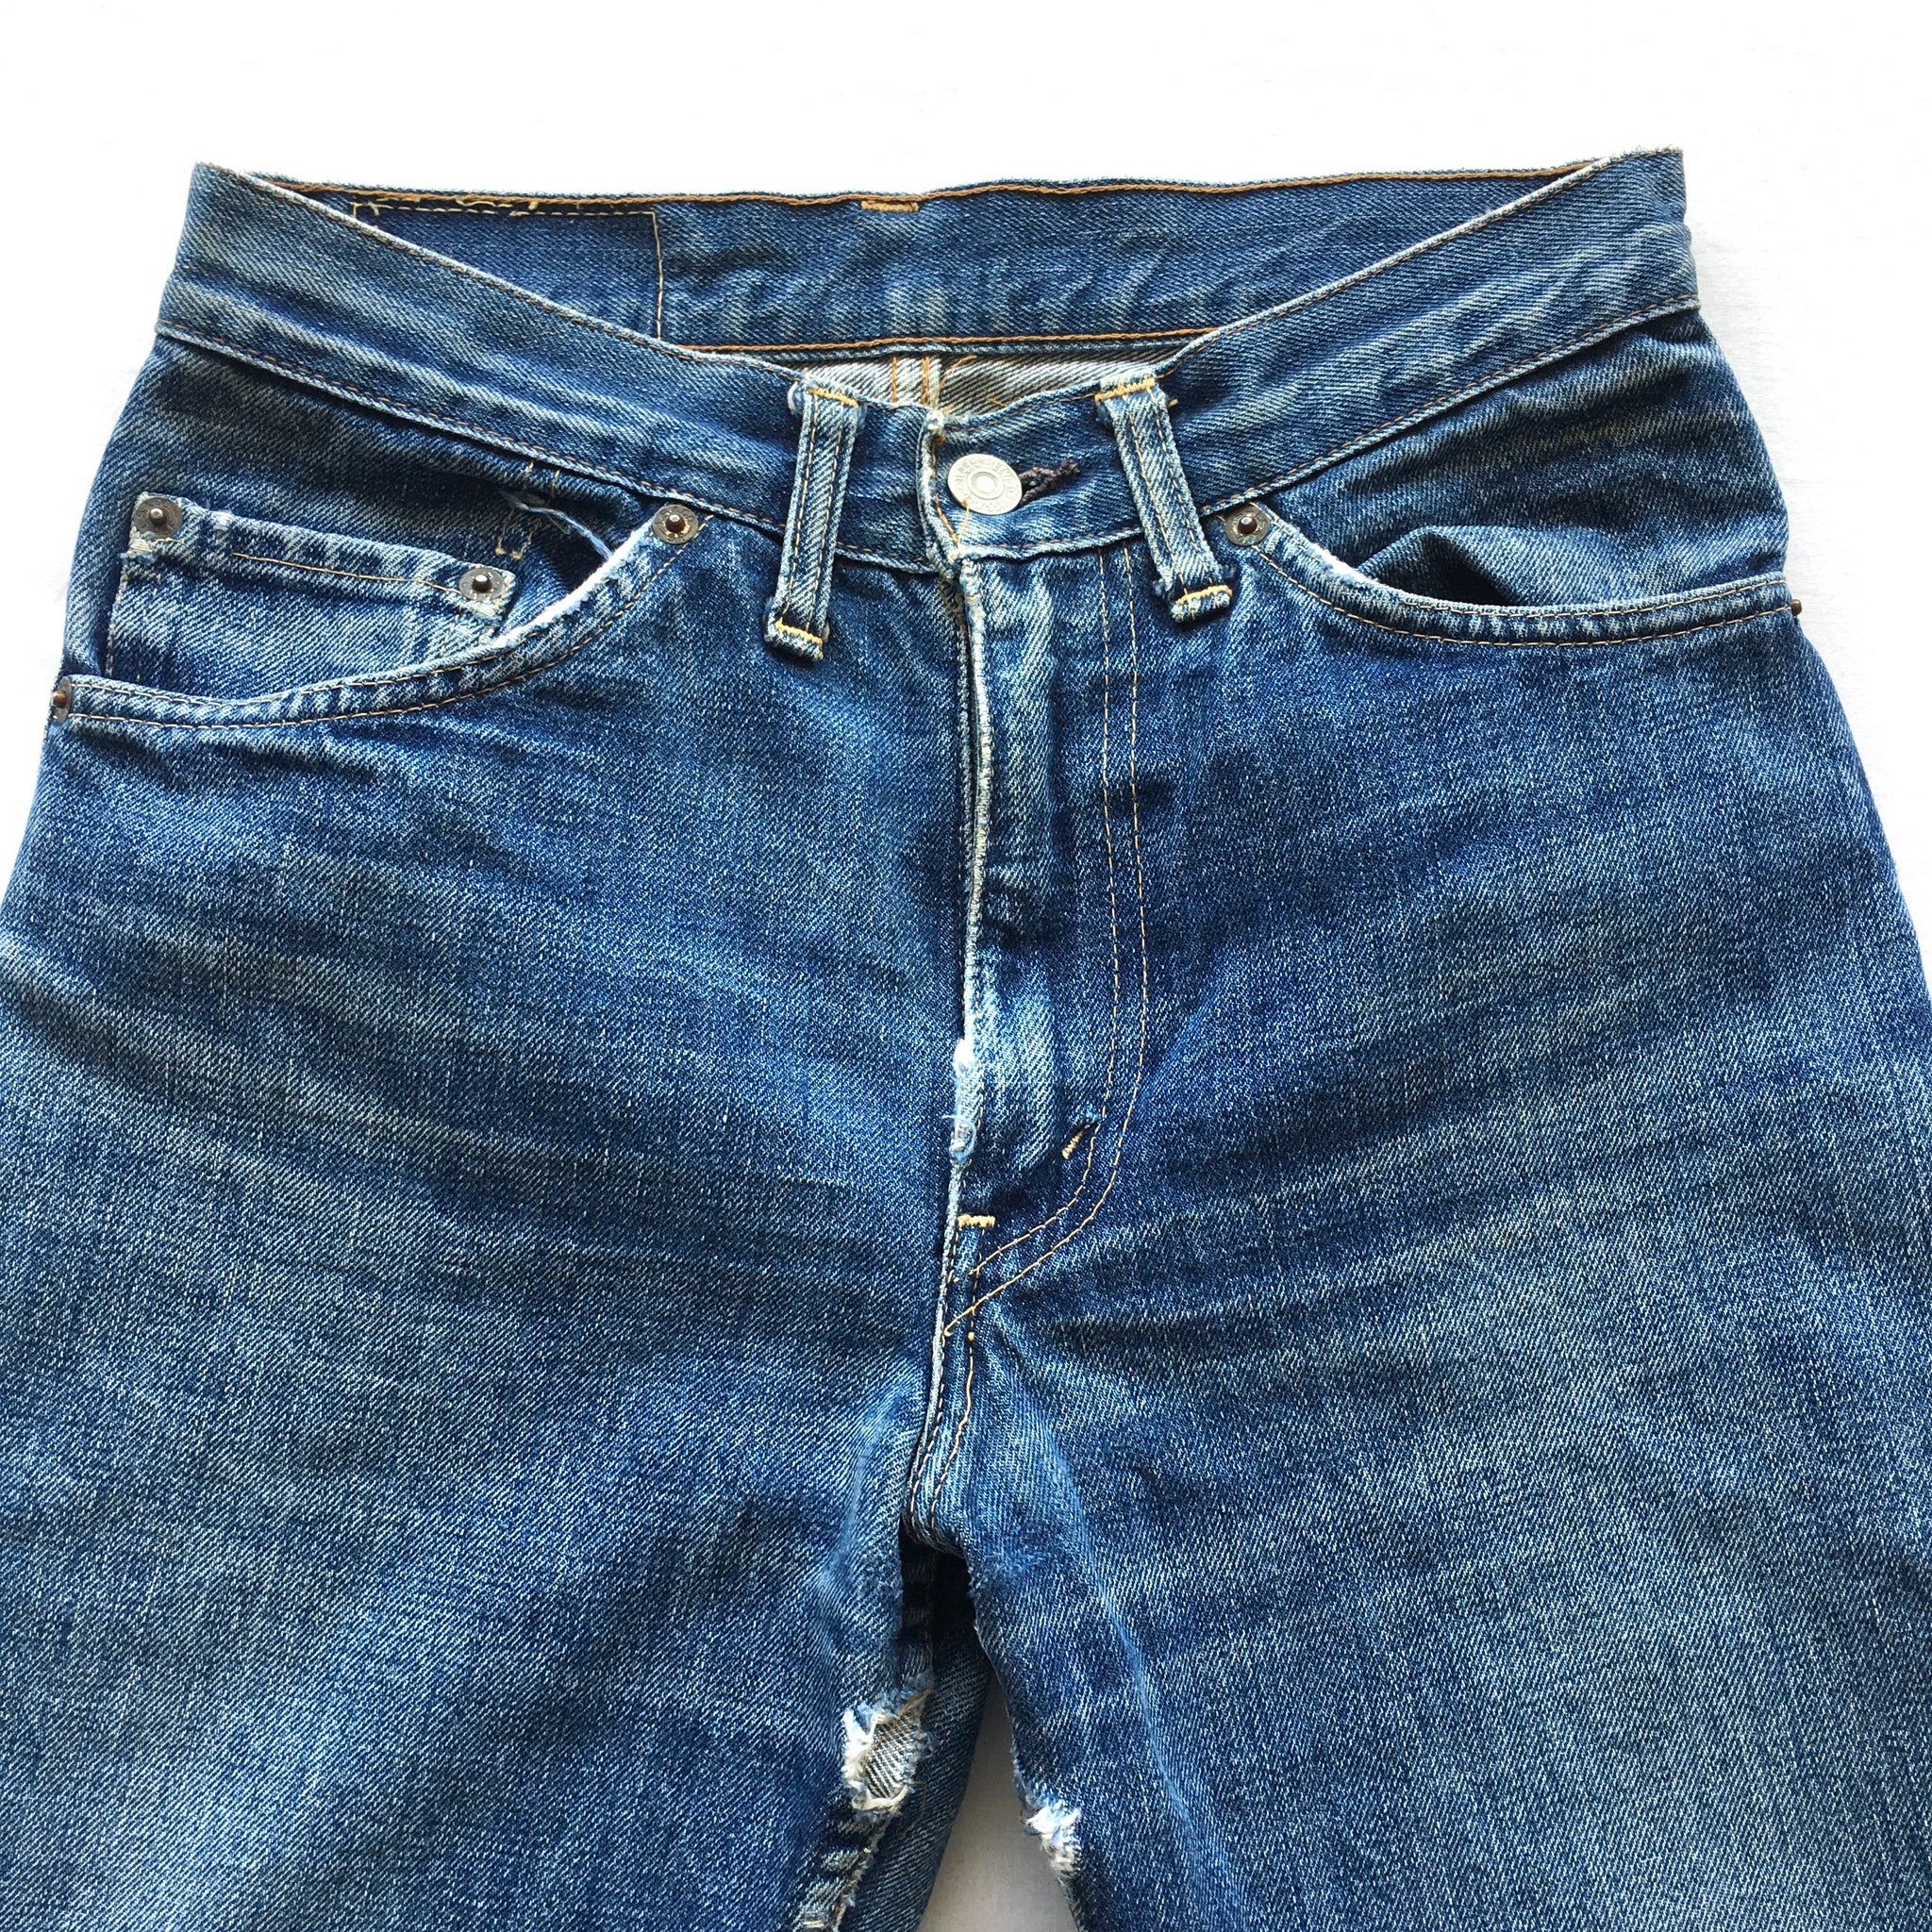 1960s Levis Big E 505 Jeans Size 27x30 – ROCKHOPPER VINTAGE